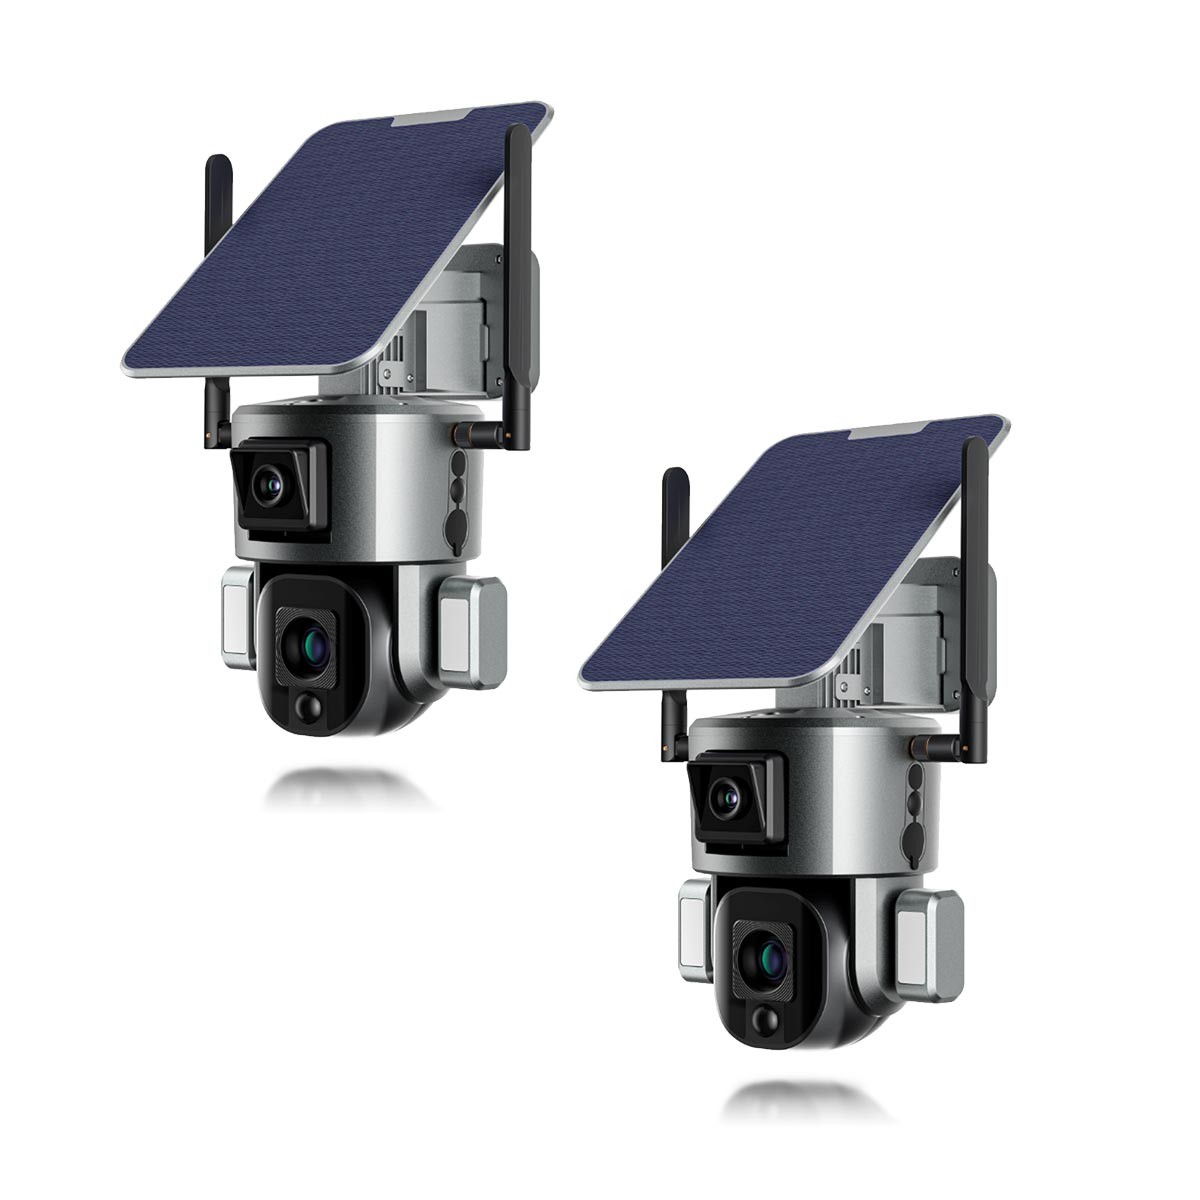 Kit de 2 Doubles caméras pilotables solaires Wifi Ultra HD 4K waterproof Zoom X10 autotracking IR détection de mouvement avec alarme et sirène compatible iOS et Android avec microSD 128 Go